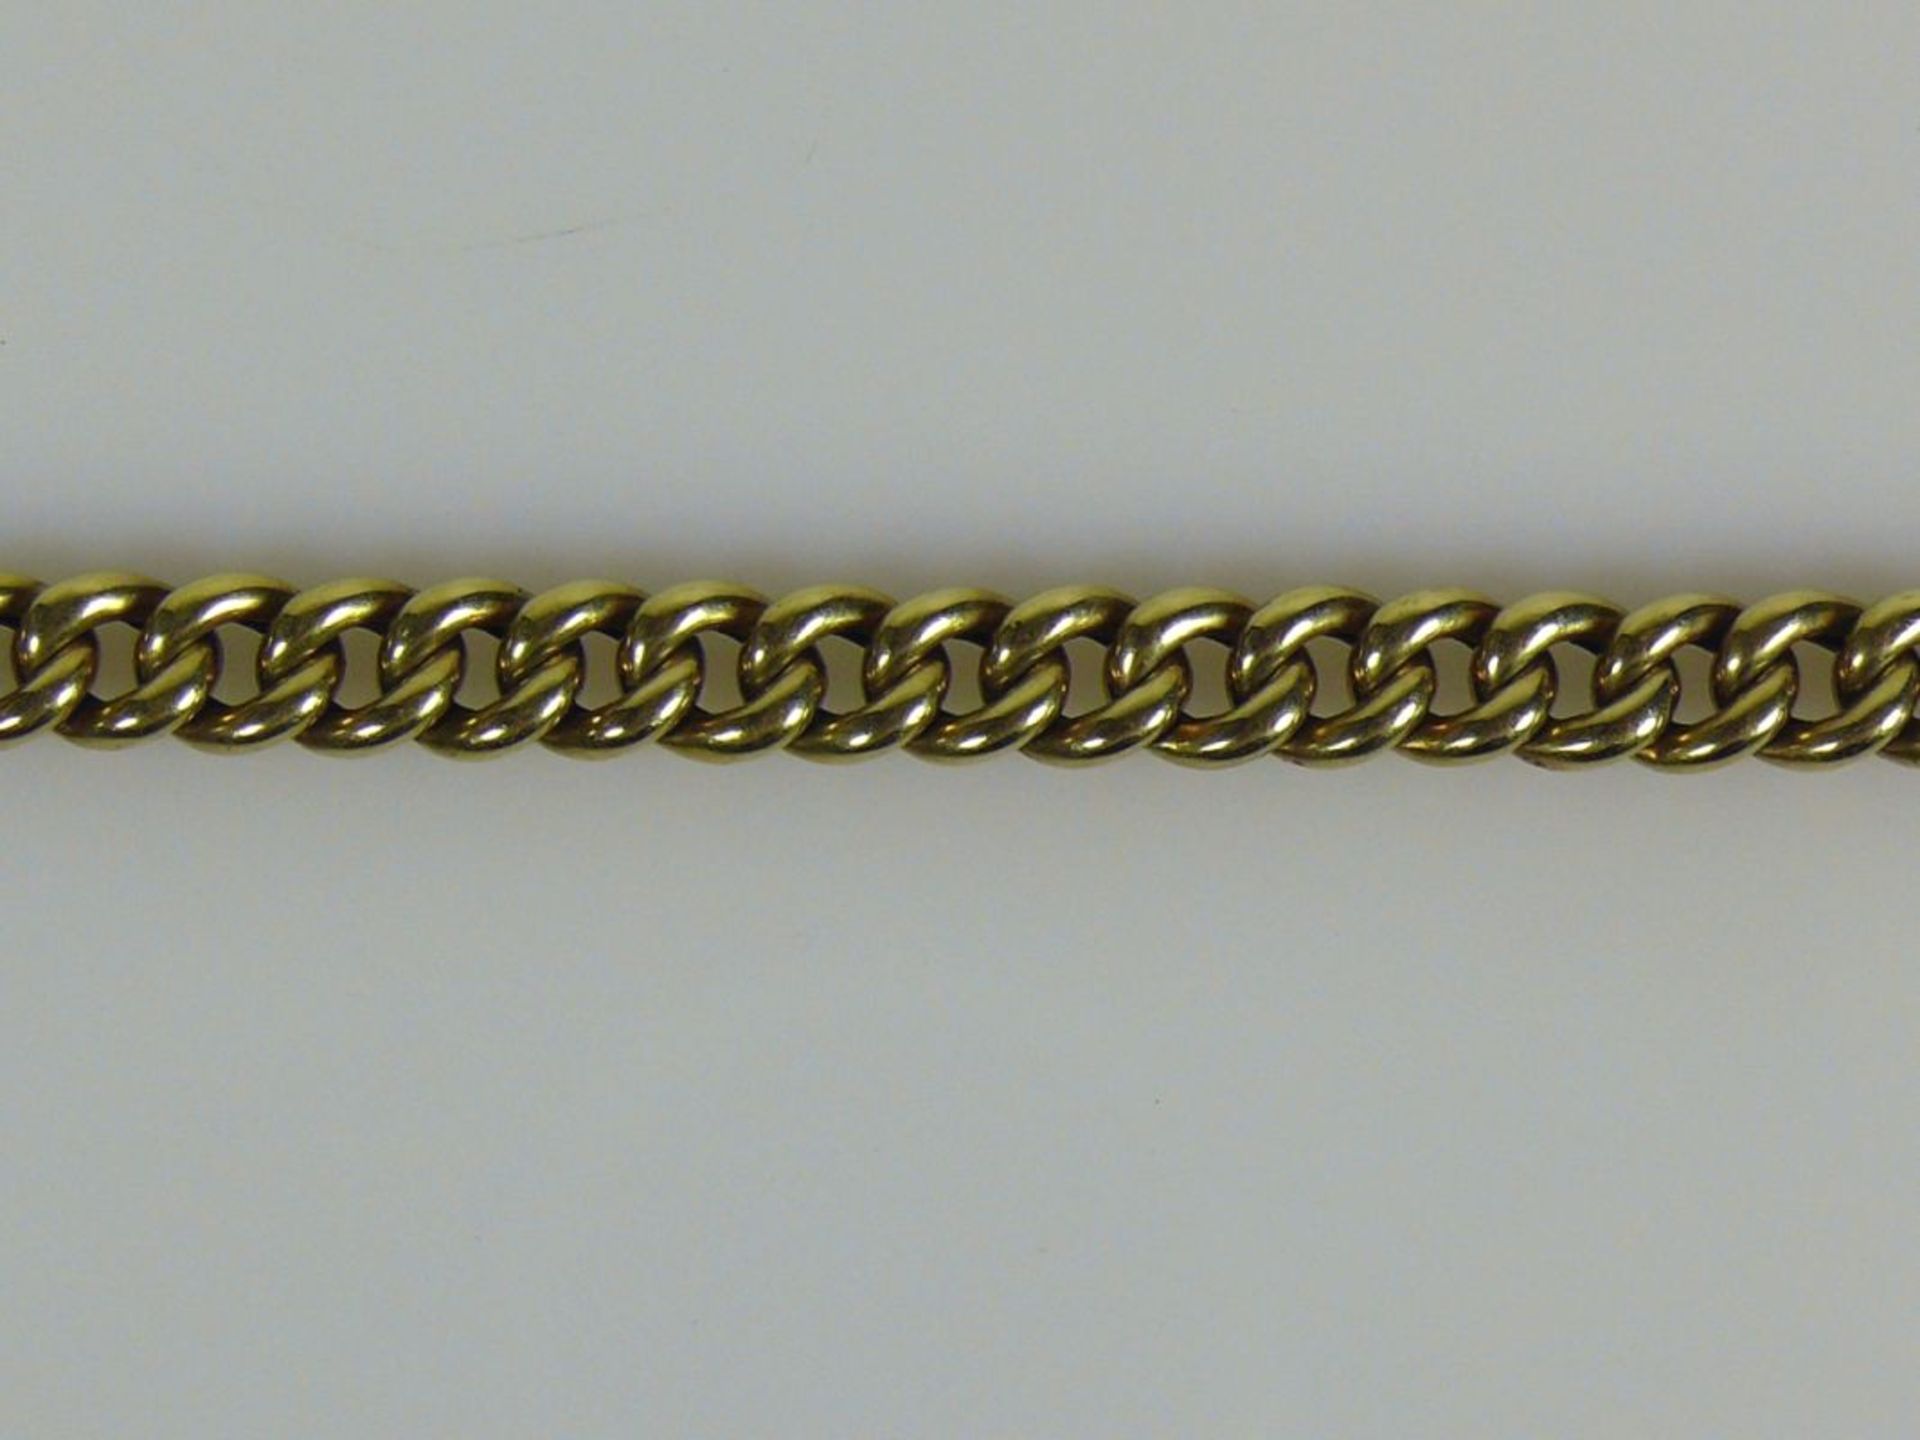 Armkette 14ct GG; Gliederdekor; 17g; L: 20 cm; doppelter Sicherheitsbügel - Bild 2 aus 2